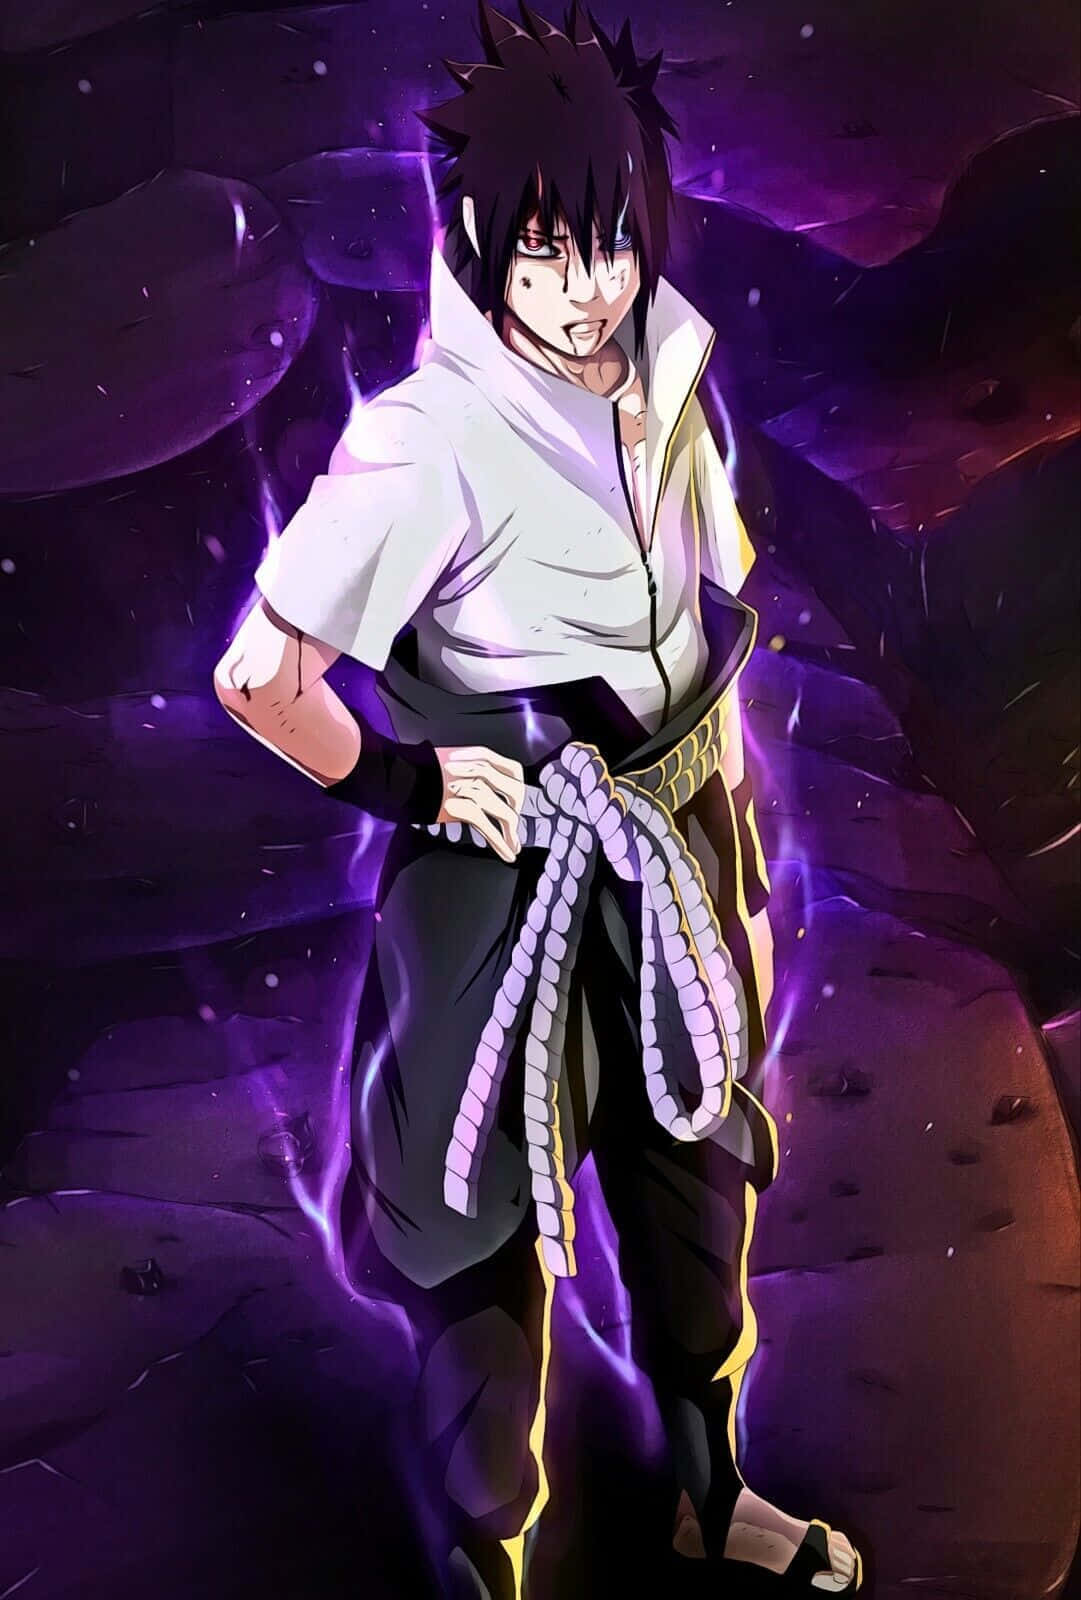 Sasukeuchiha - Um Ninja Adorado Da Série De Anime Naruto.